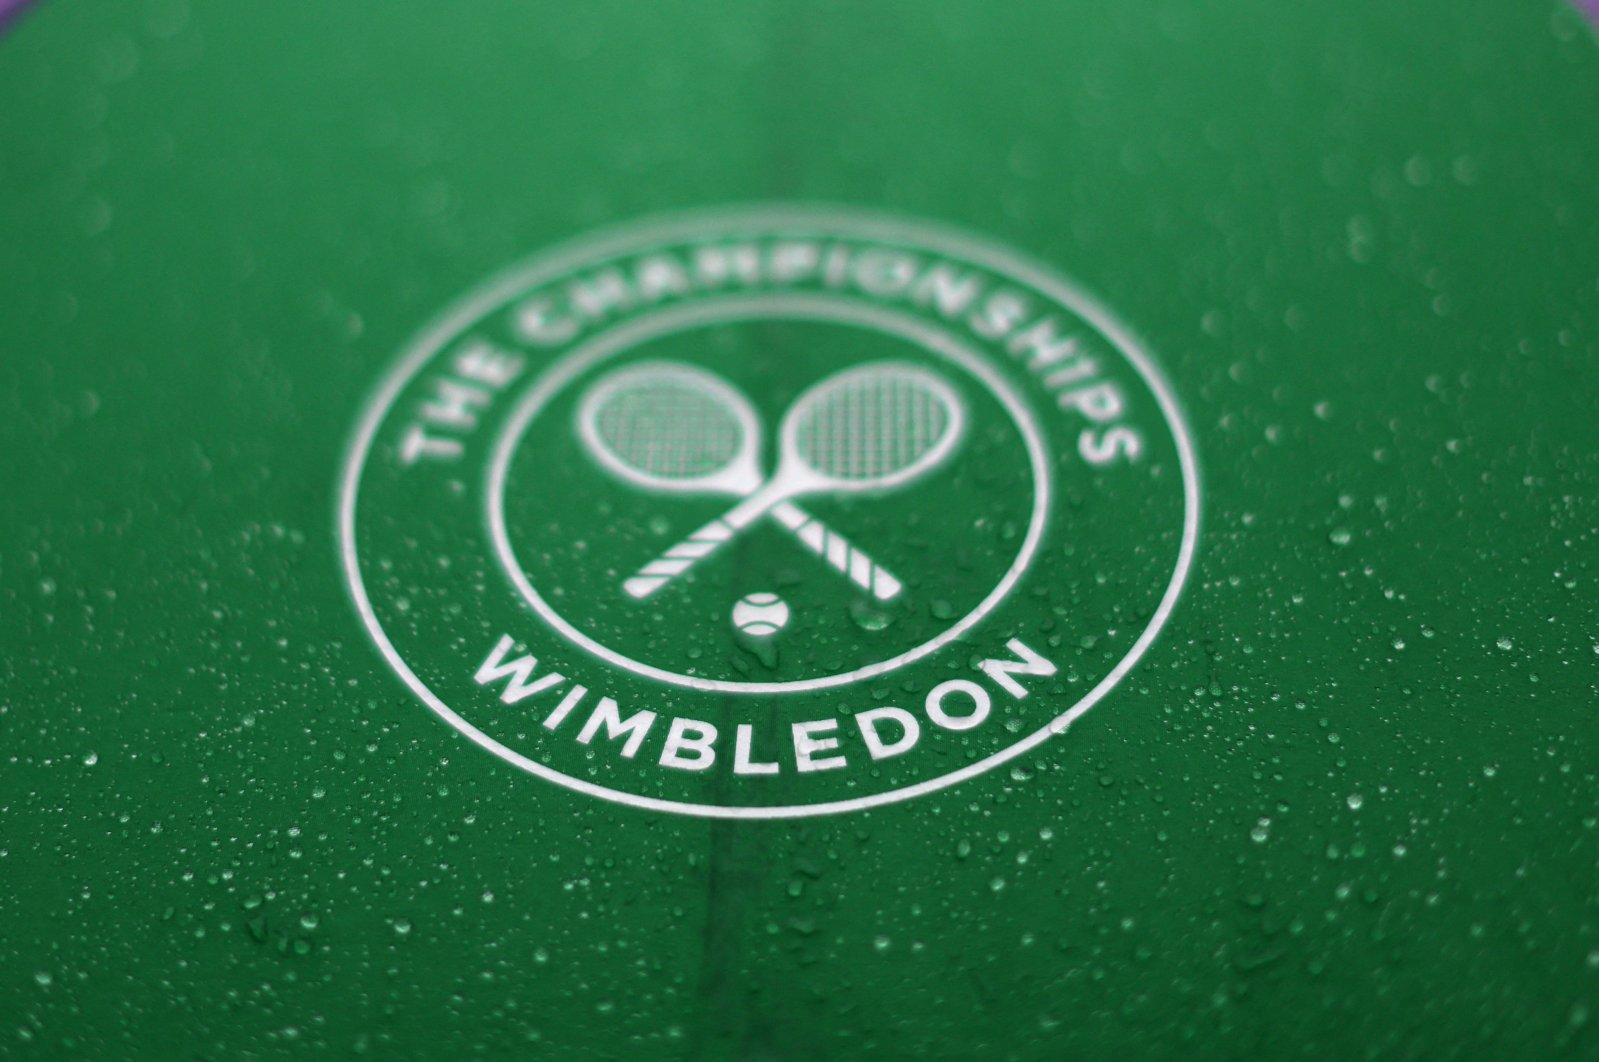 A Wimbledon umbrella is seen before a match Birmingham Classic match, Birmingham, England, June 18, 2022. (Reuters Photo)